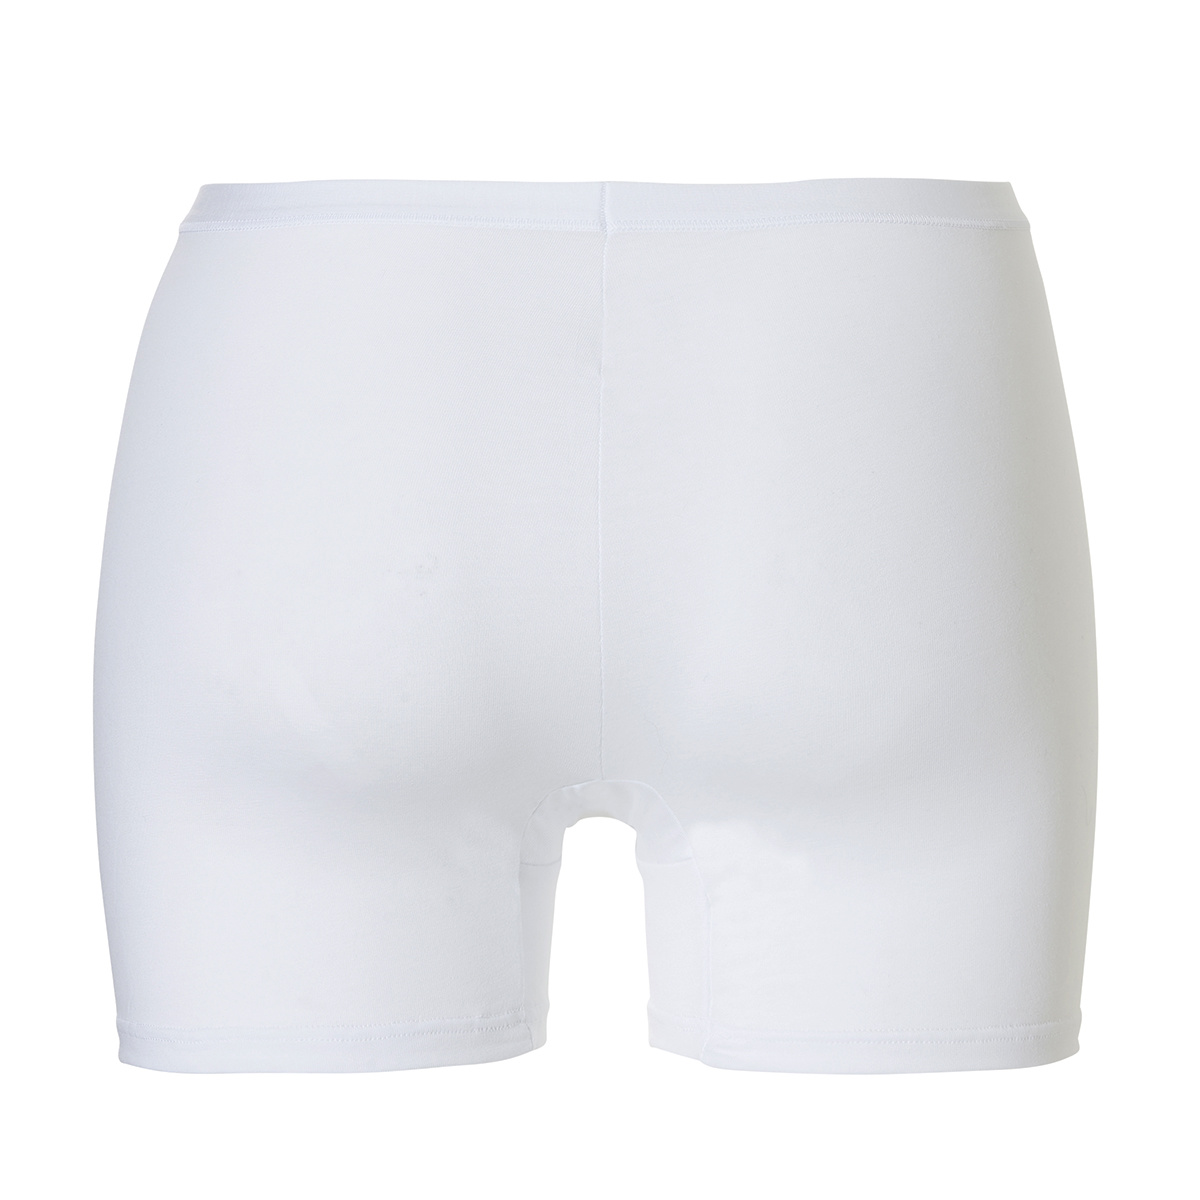 Cotonella Ladies Boxer Shorts Cotton White 2-Pack